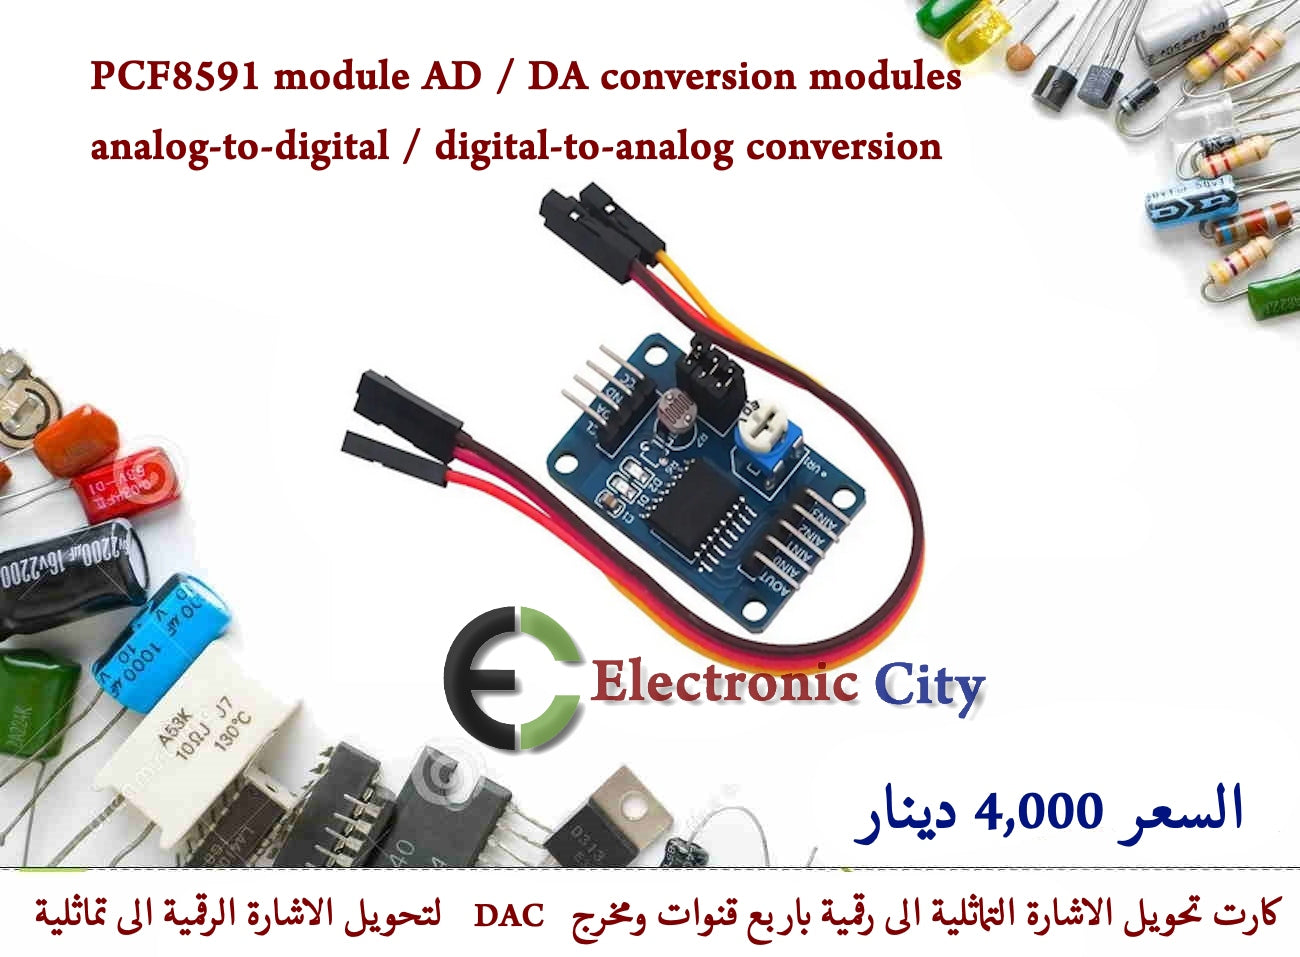 PCF8591 module AD to DA conversion modules analog-to-digital And digital-to-analog conversion #V10 010195